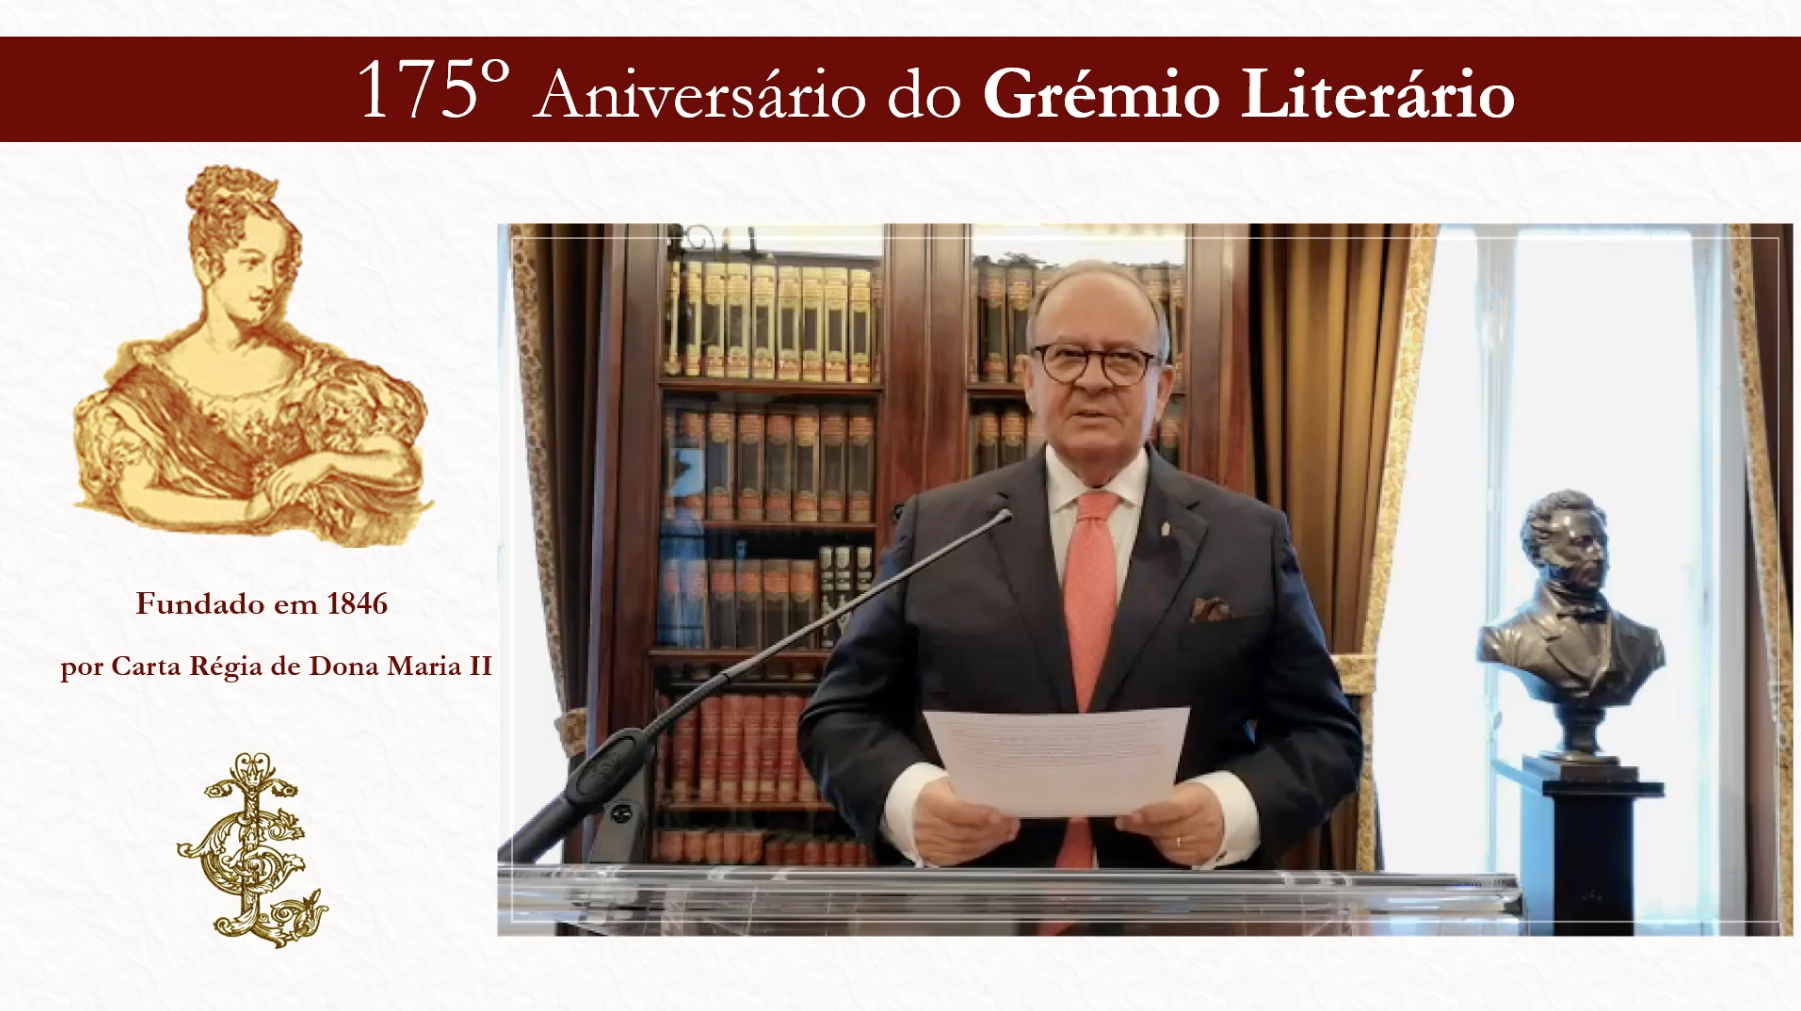 Vídeo comemorativo do 175º aniversário do Grémio Literário.